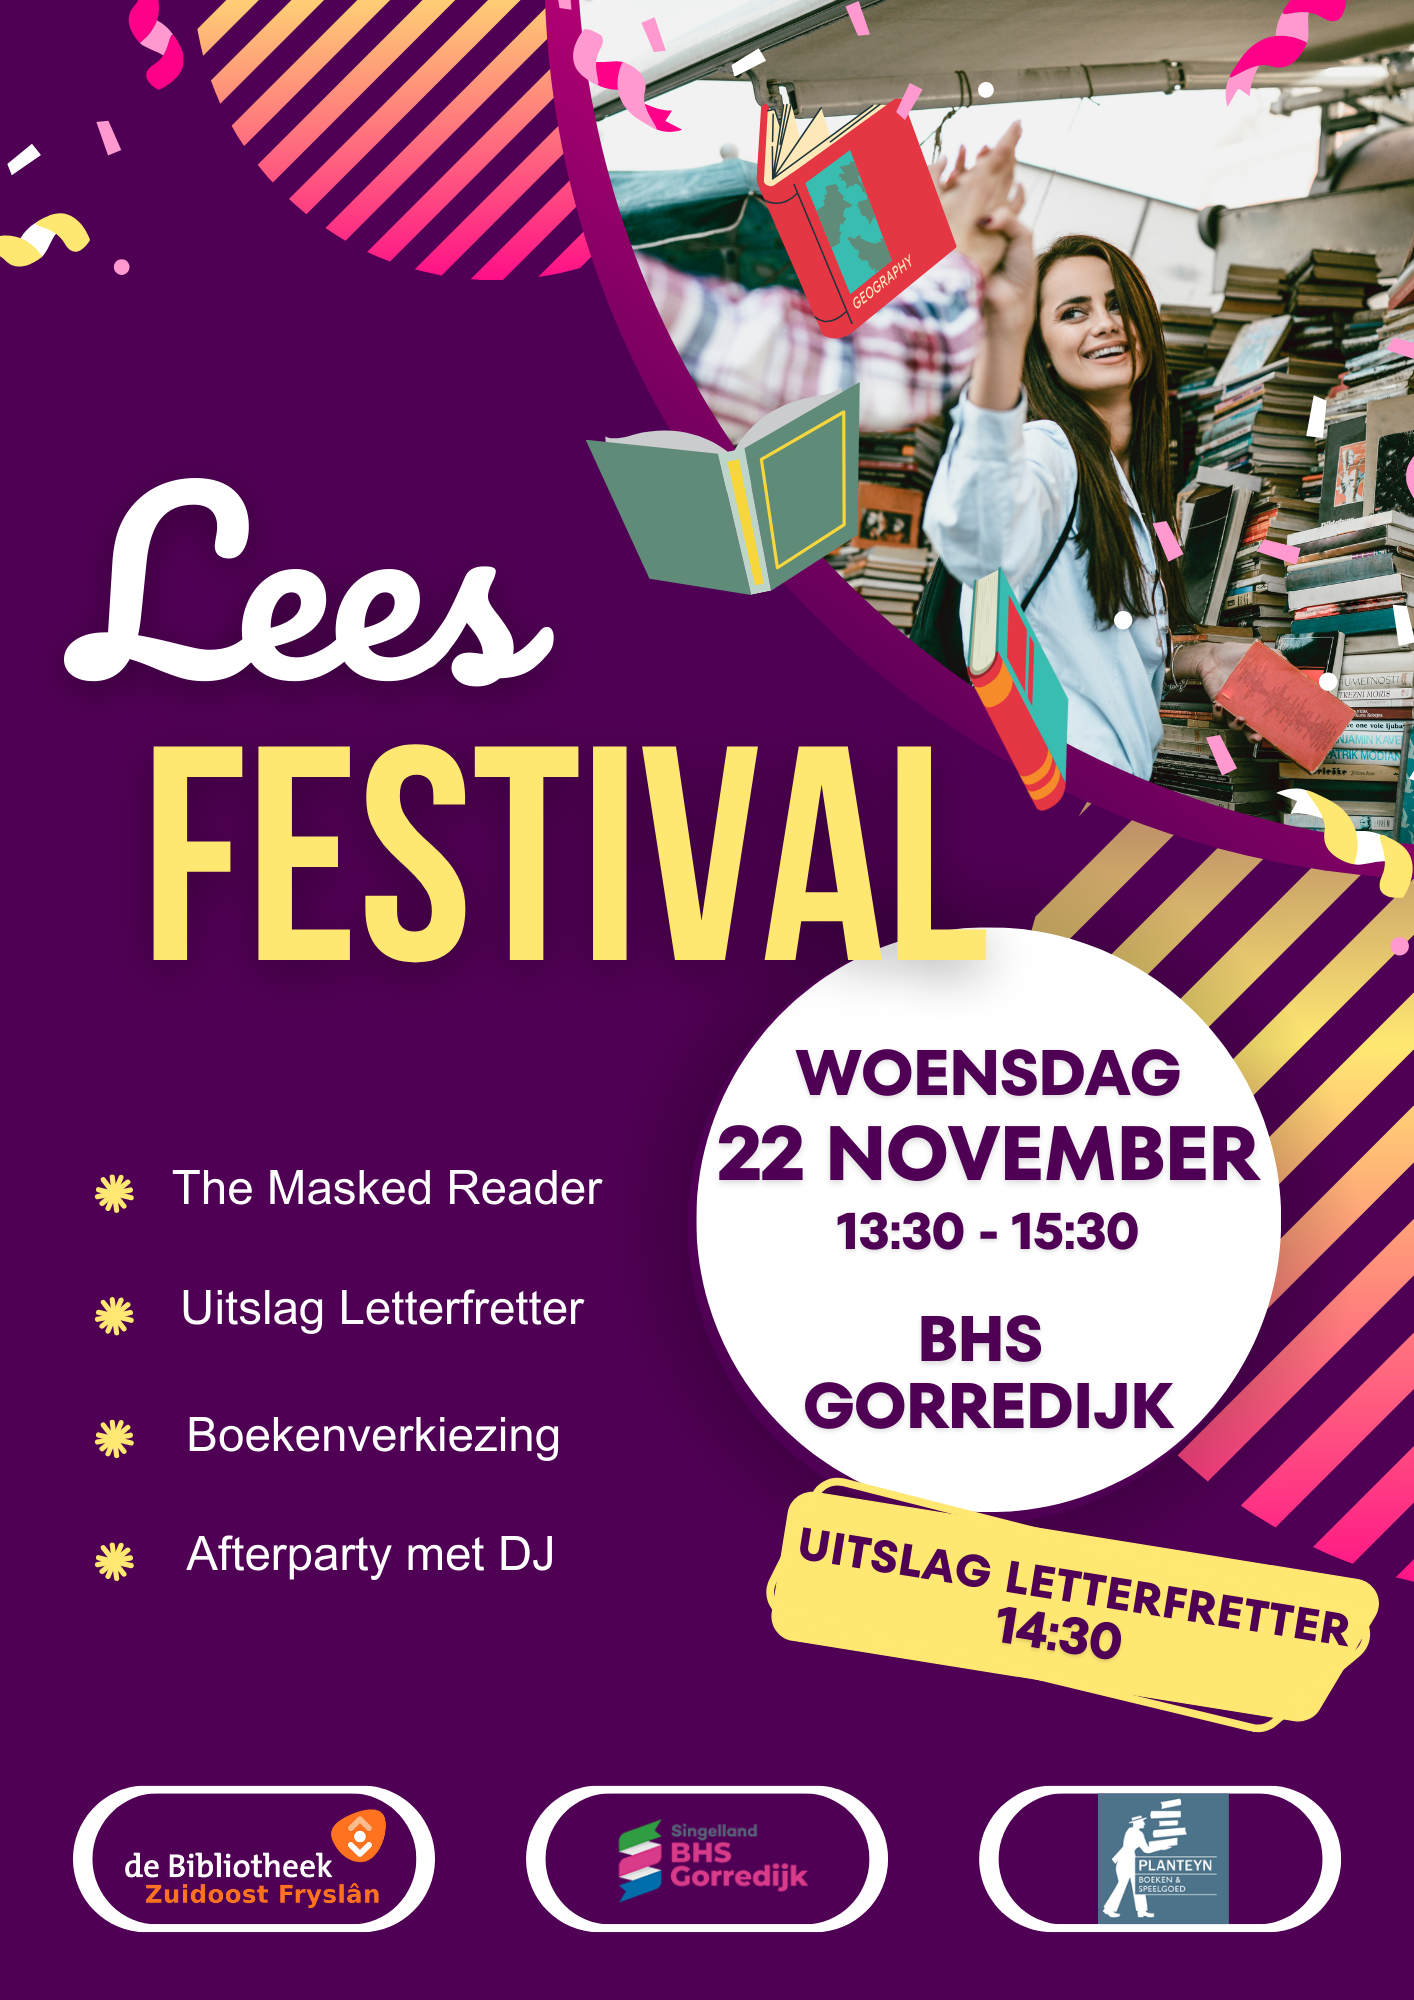 Op woensdag 22 november wordt er op Singelland BHS Gorredijk een leesfestival gehouden.